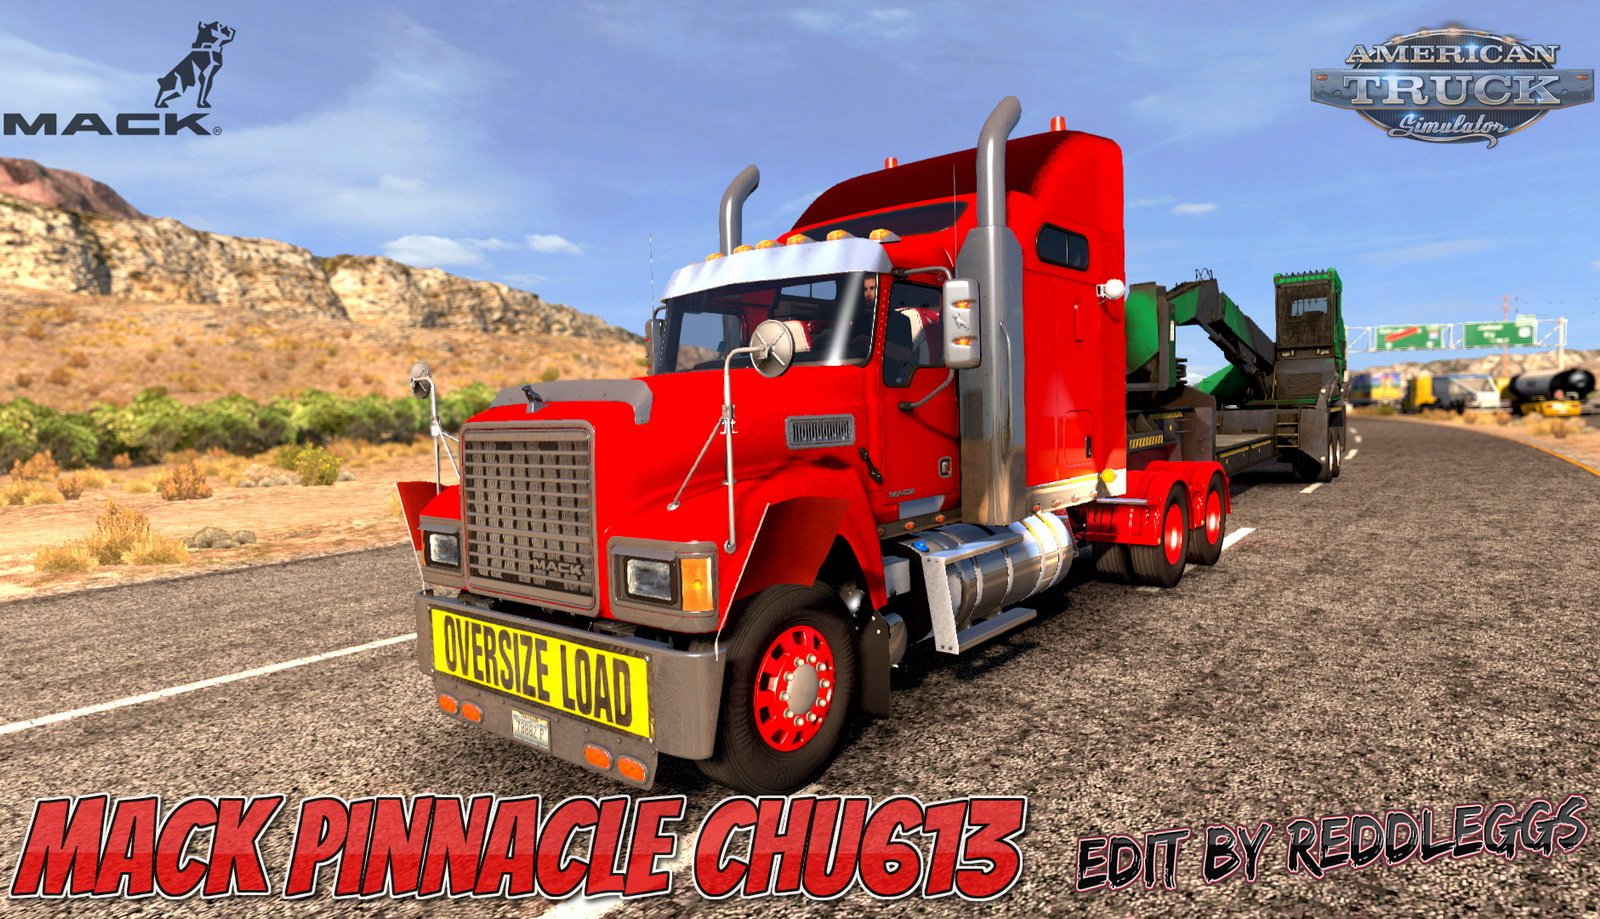 american truck simulator for mac